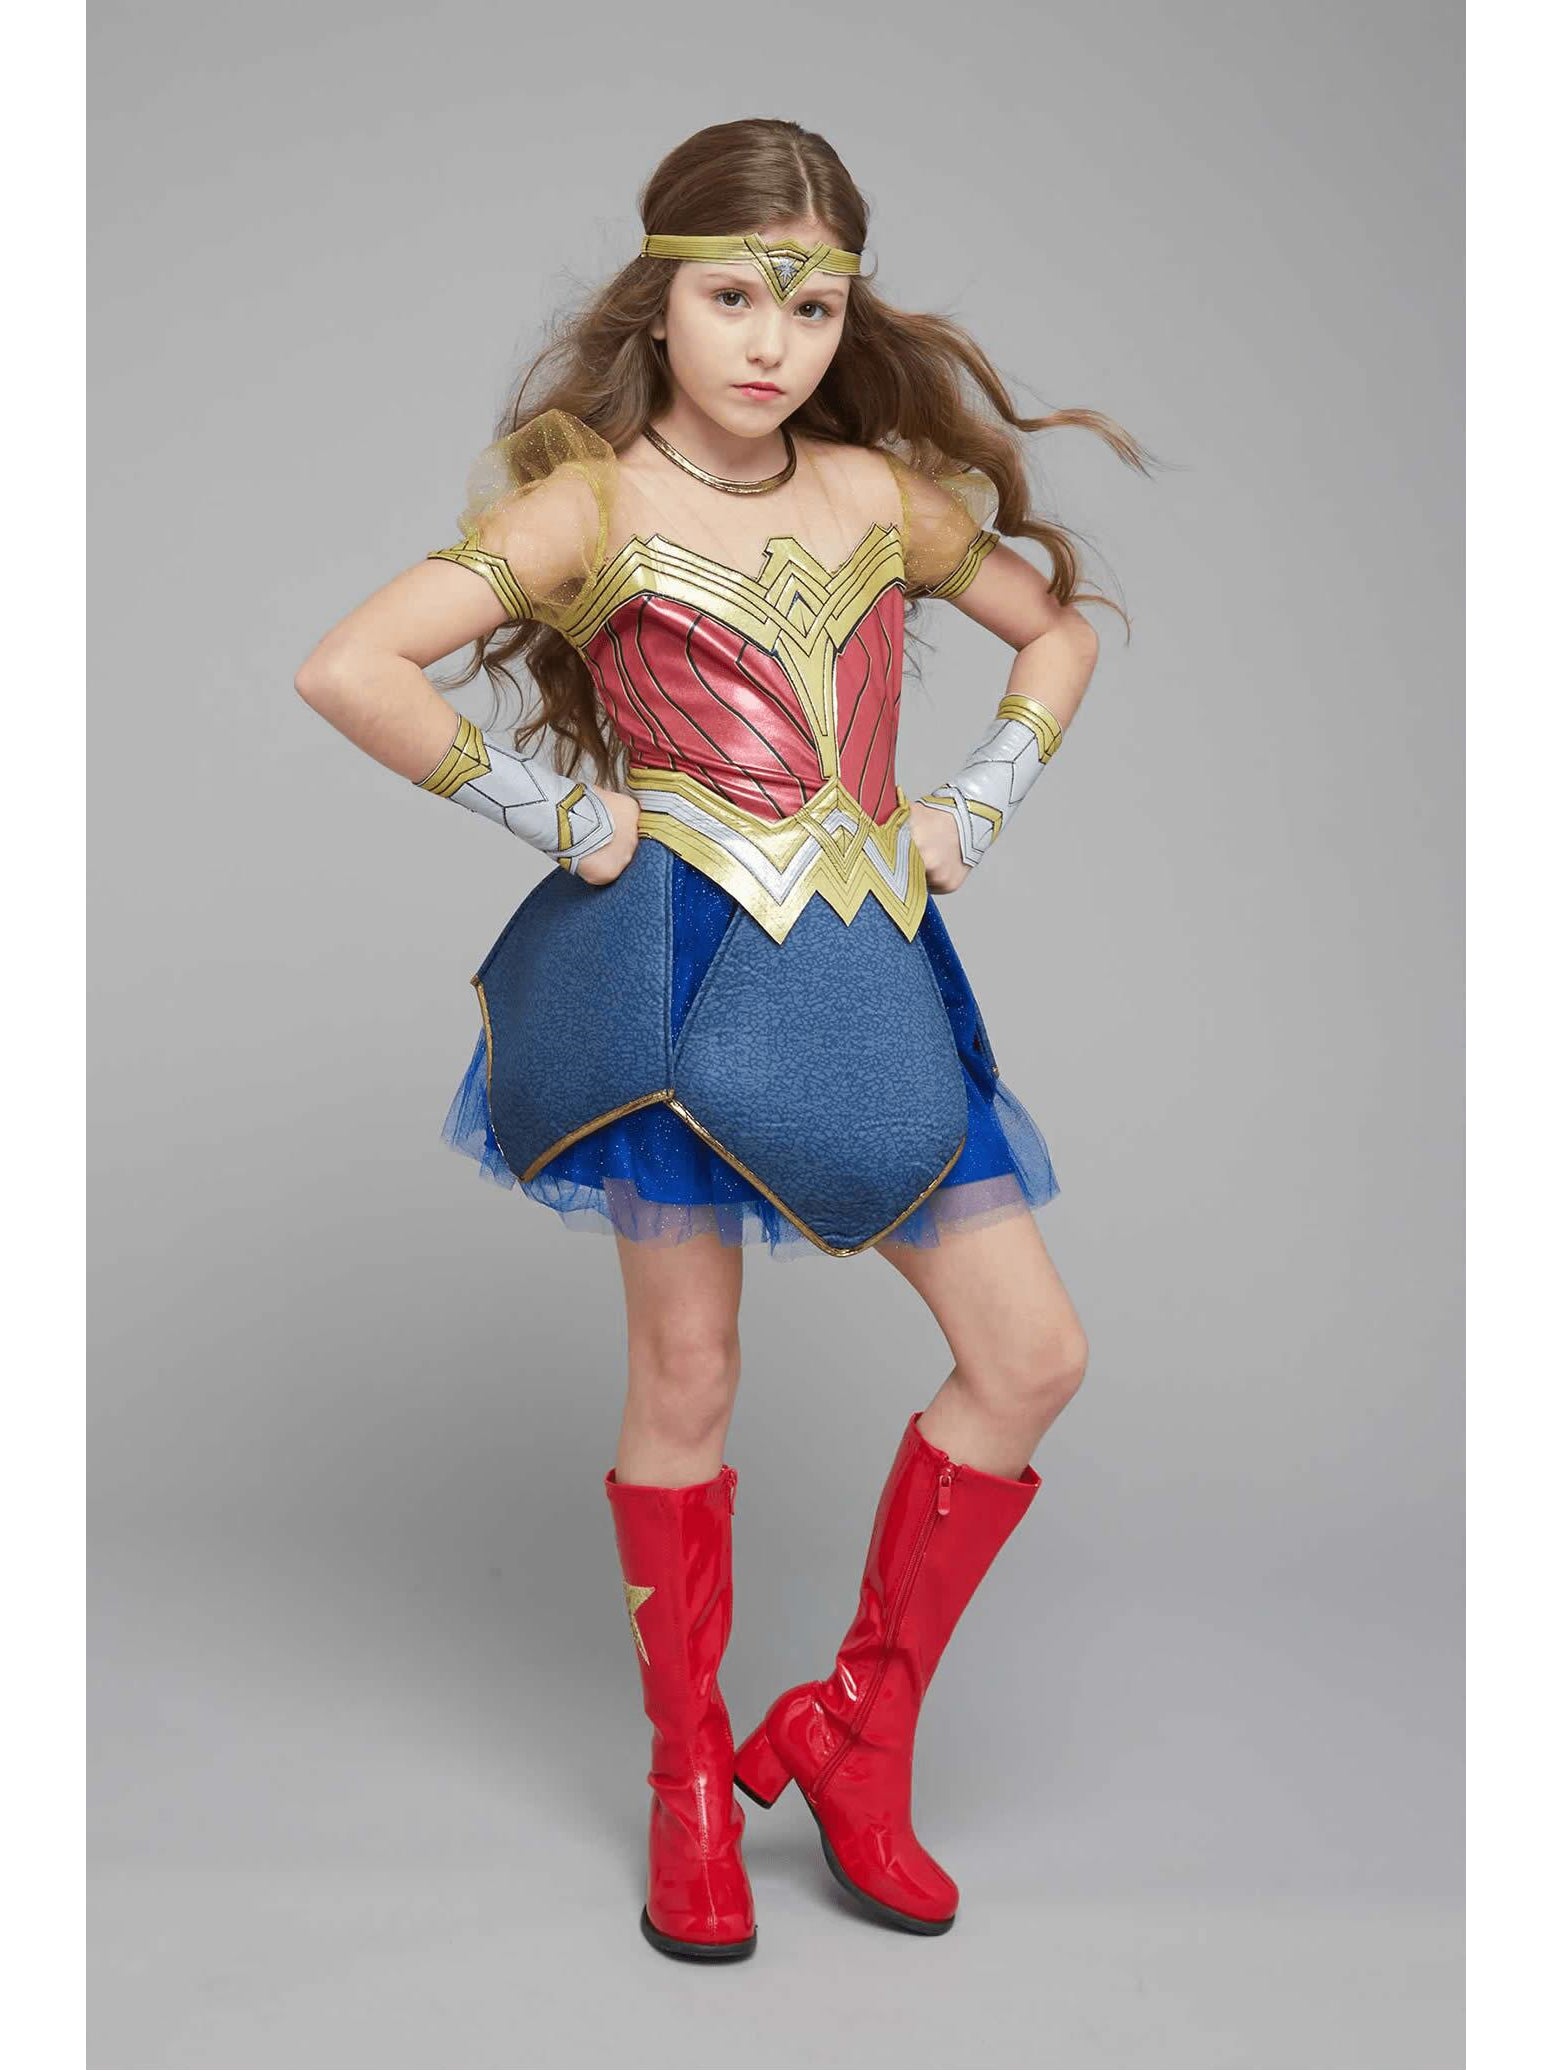 Wonder Woman Dress